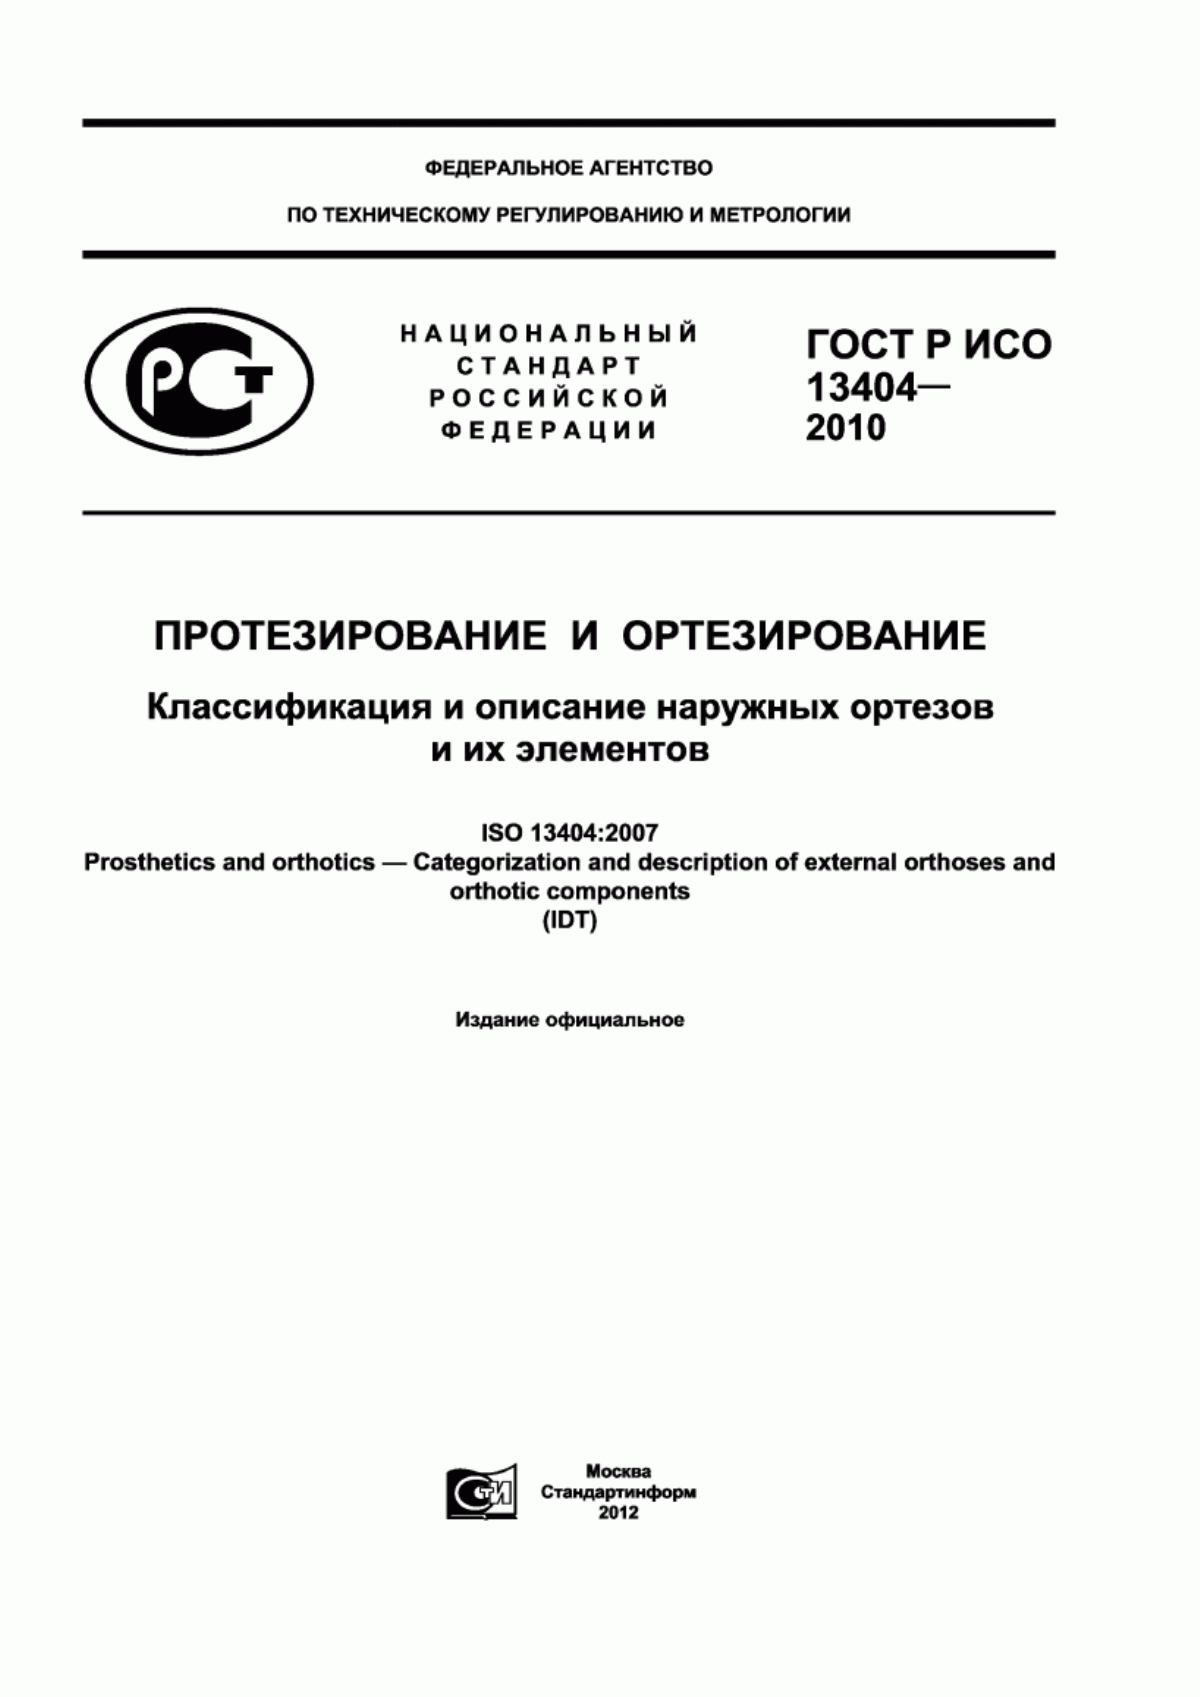 ГОСТ Р ИСО 13404-2010 Протезирование и ортезирование. Классификация и описание наружных ортезов и их элементов